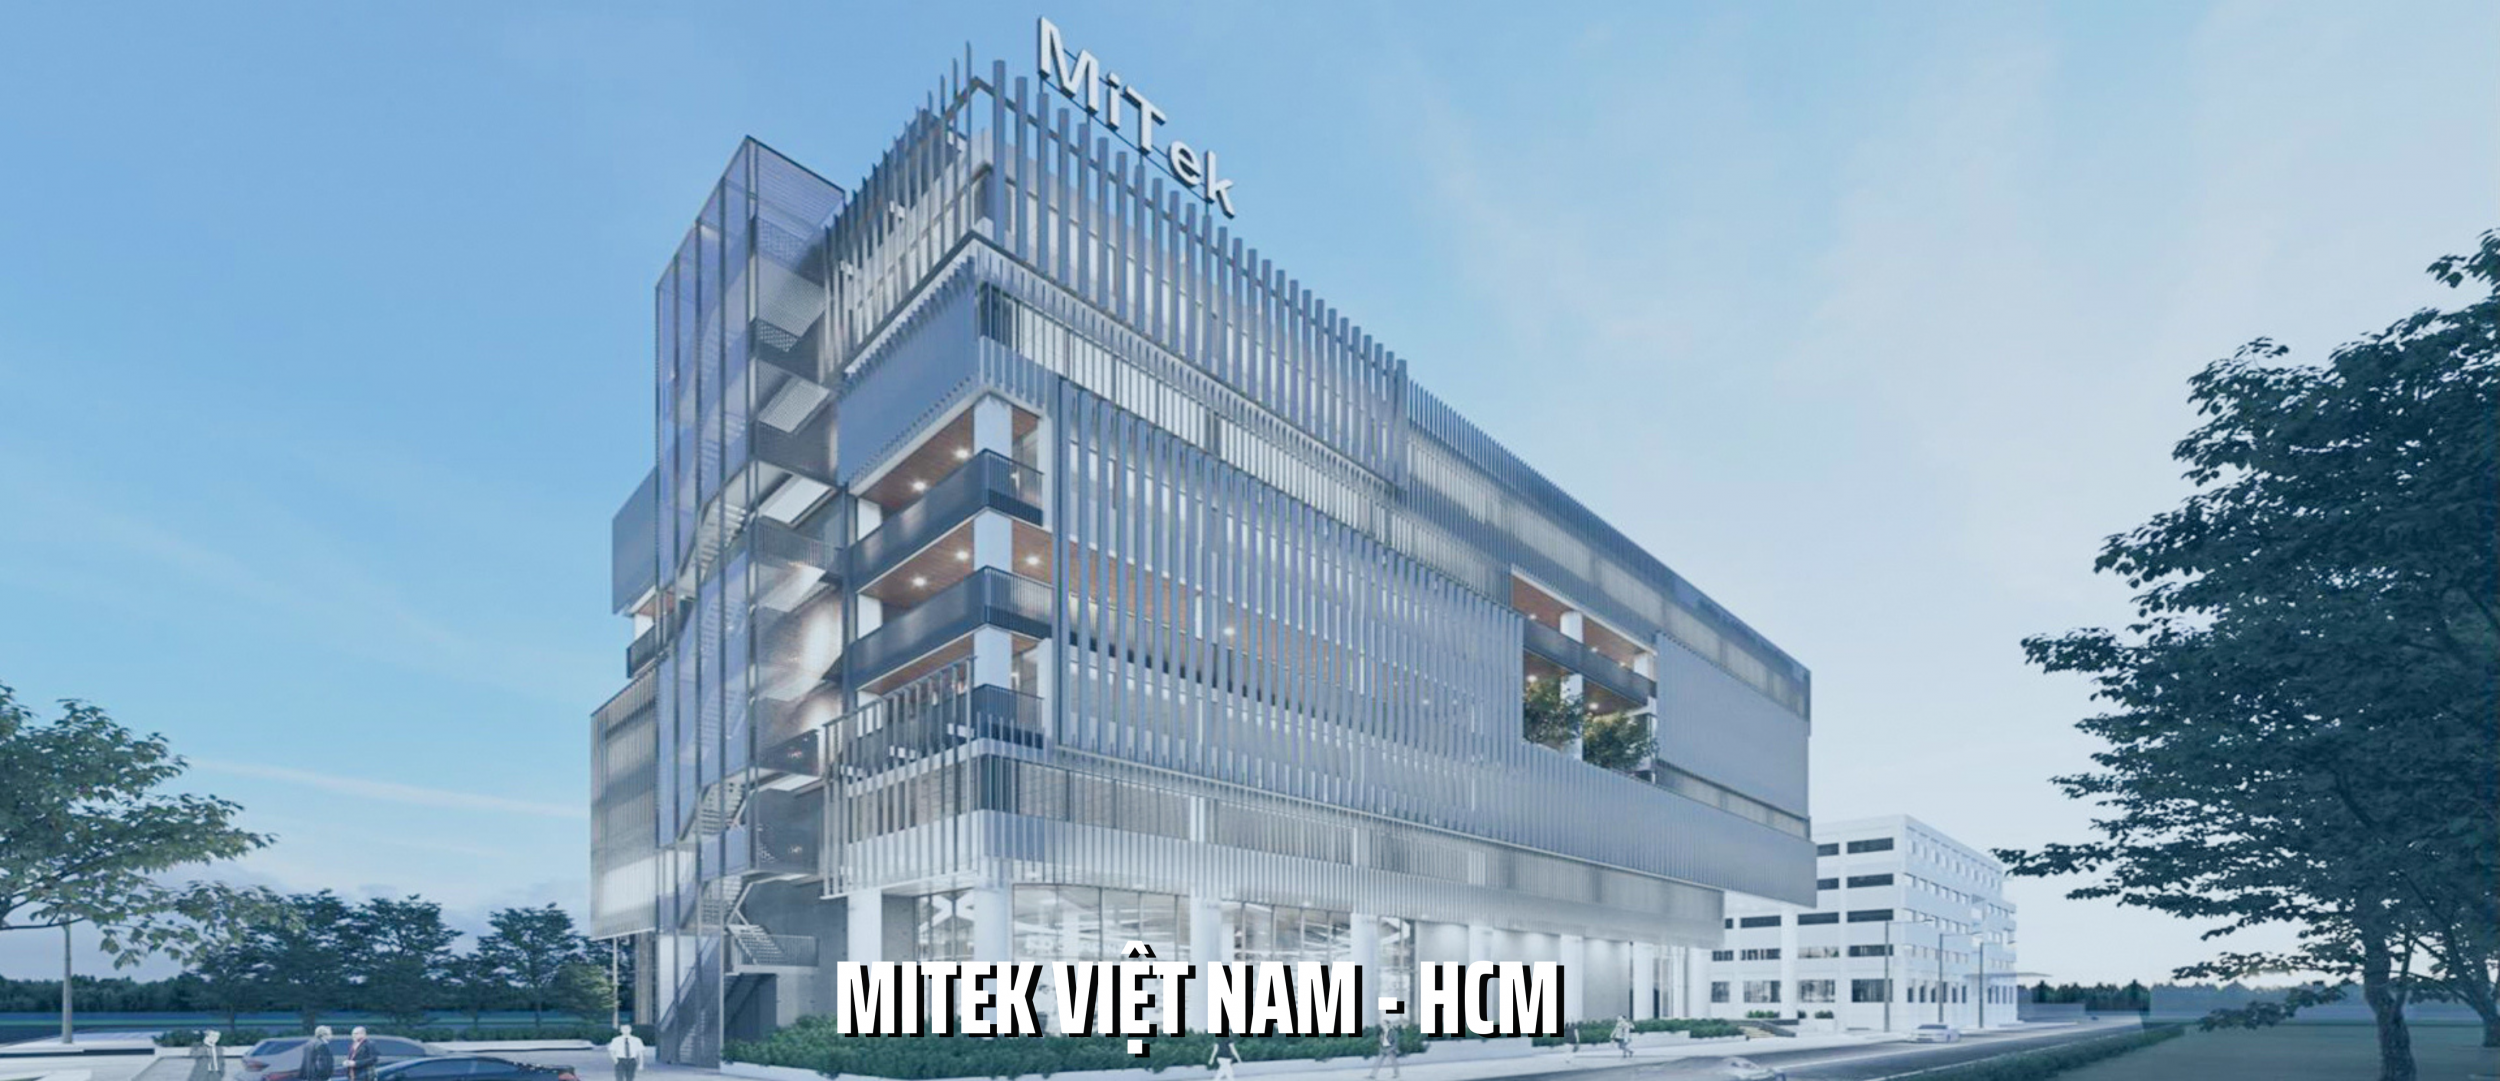 MITEK VIETNAM- HCM